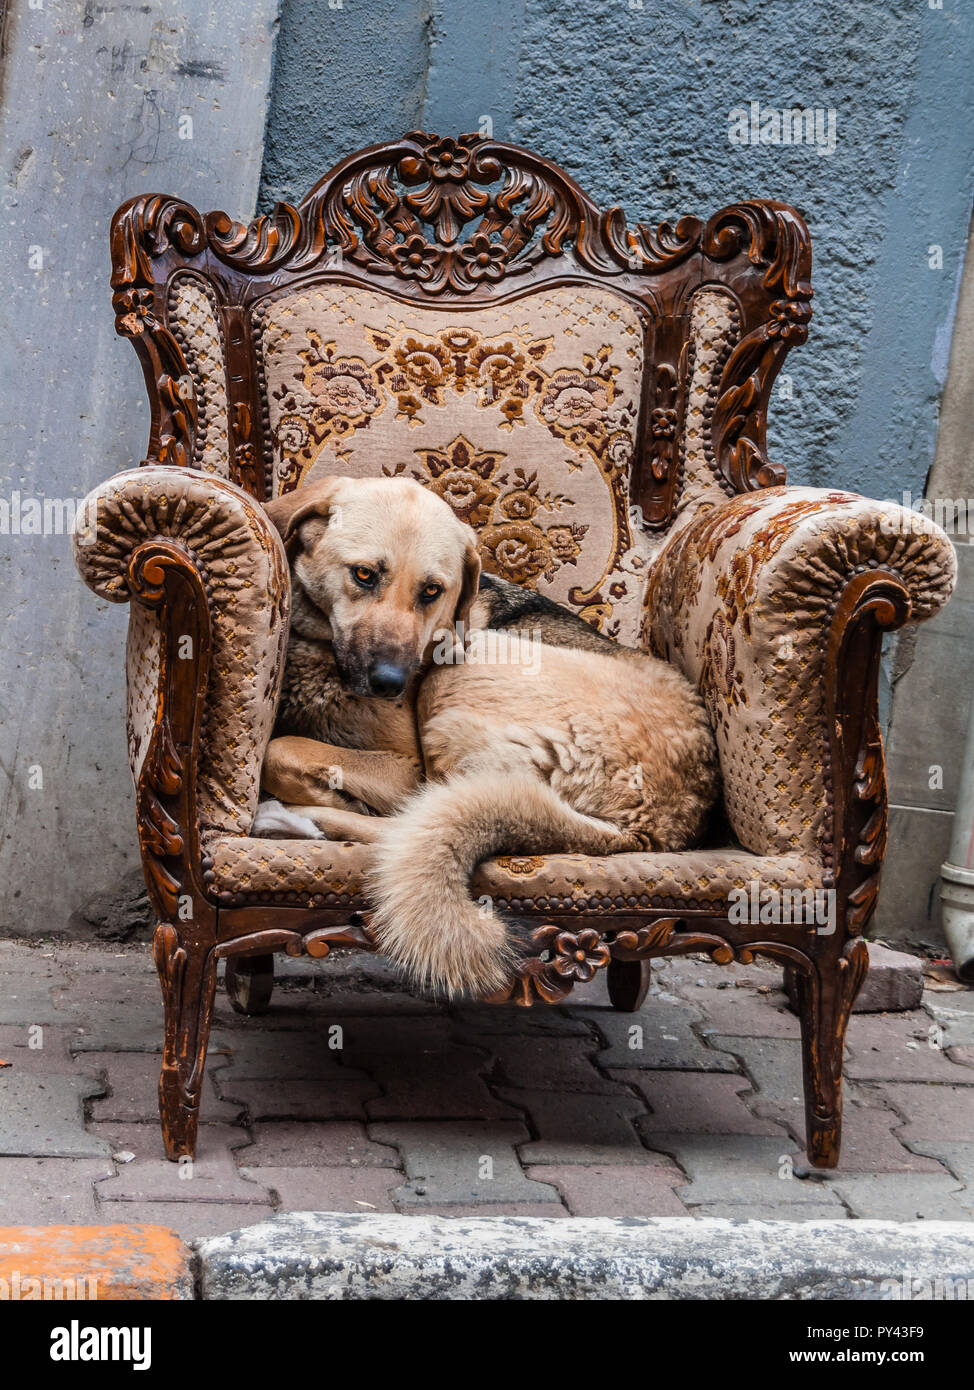 Istanbul, Türkei, April 5. 2012: Straße Hund zusammengerollt in einem reich verzierten Stuhl auf der Straße. Stockfoto